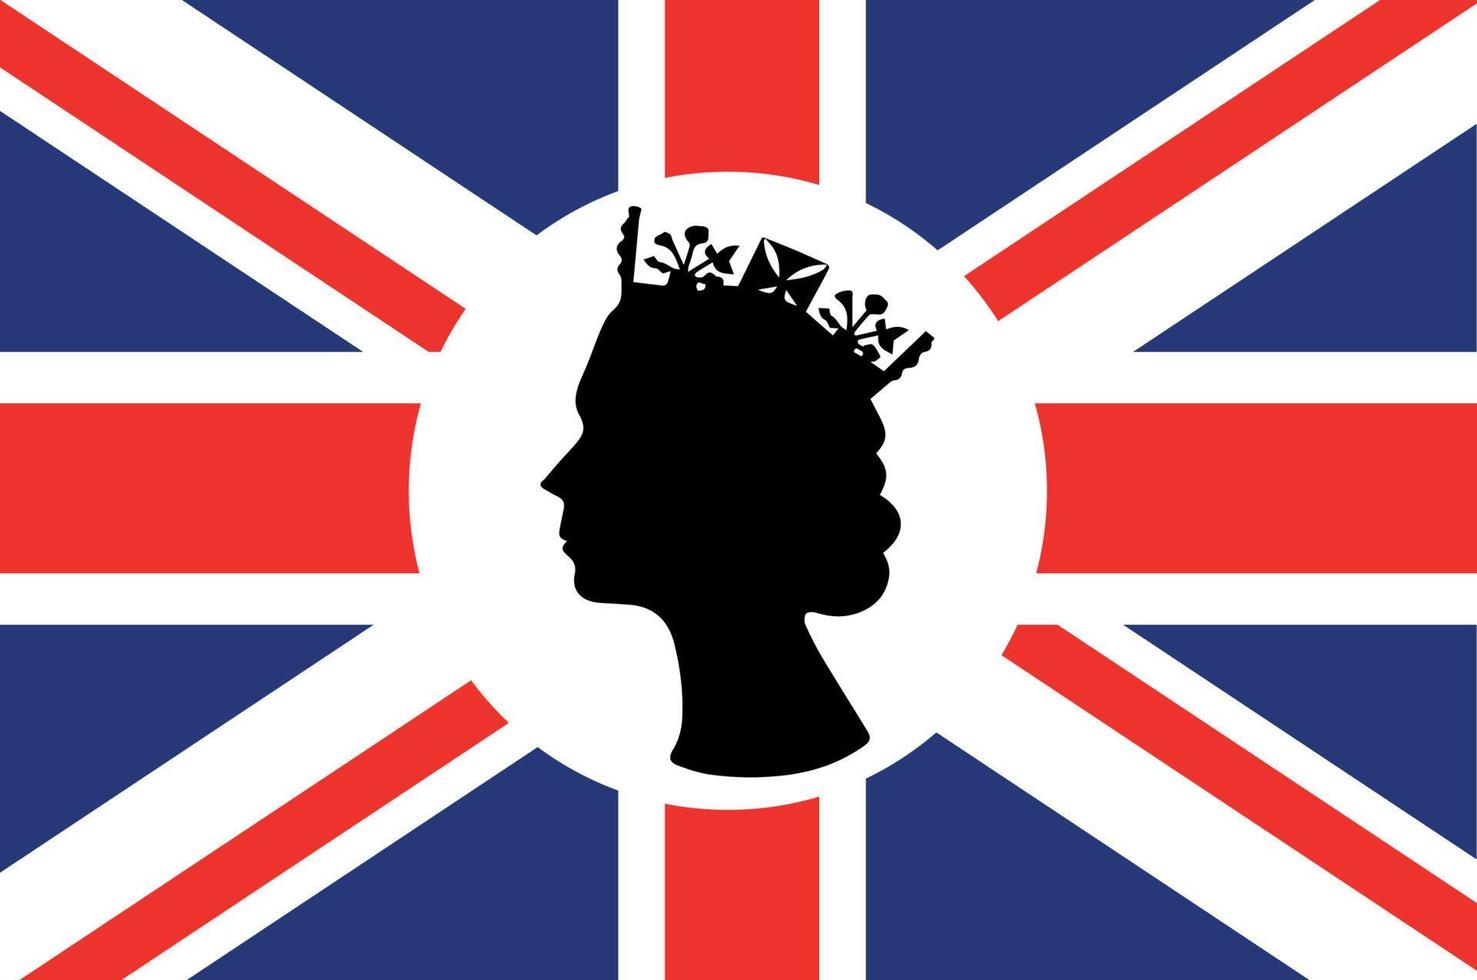 Elisabetta Regina viso nero e bianca con Britannico unito regno bandiera nazionale Europa emblema icona vettore illustrazione astratto design elemento